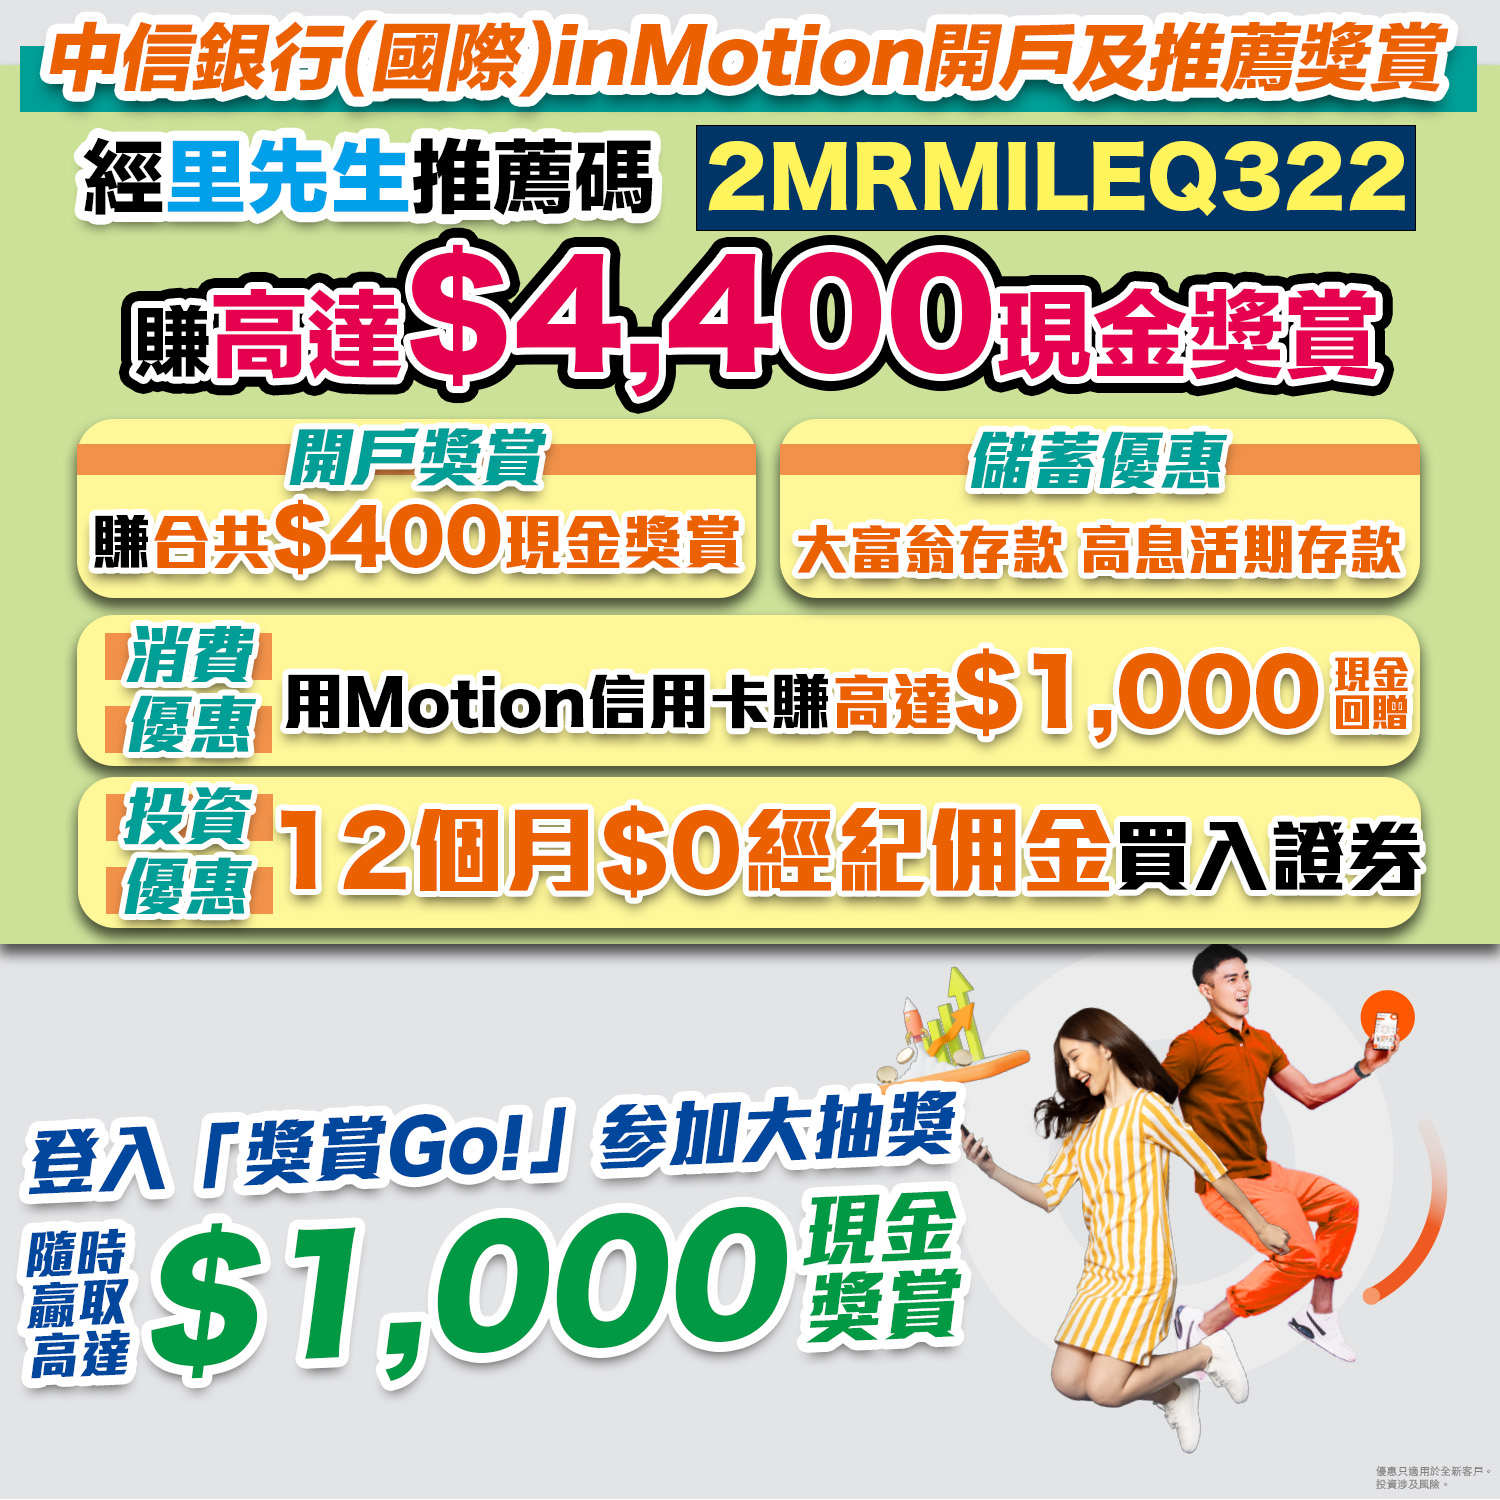 【中信 inMotion開戶】開戶送你HK$200現金獎賞! 用「2MRMILEQ322」開戶再送多HK$200現金回贈！